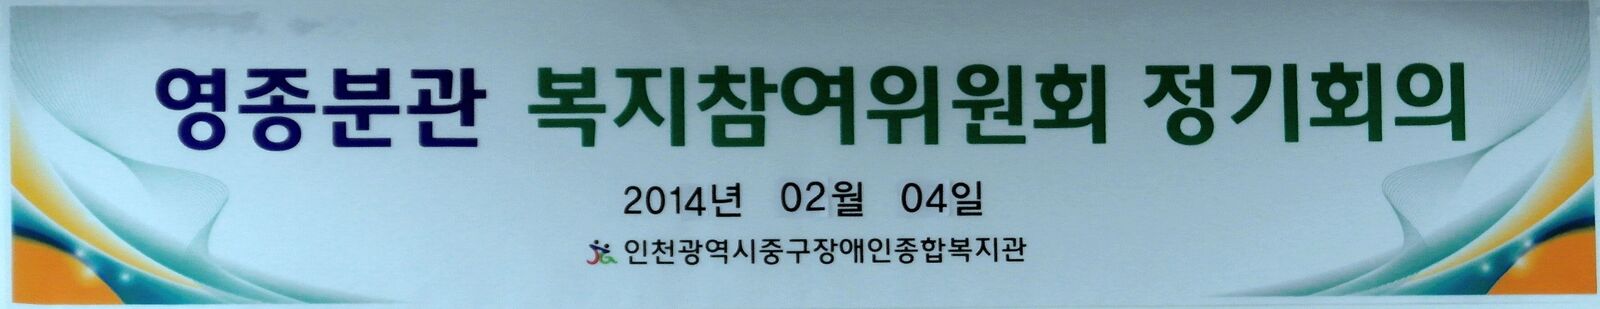 2014.02.05(수) 복지참여위원회 정기회의